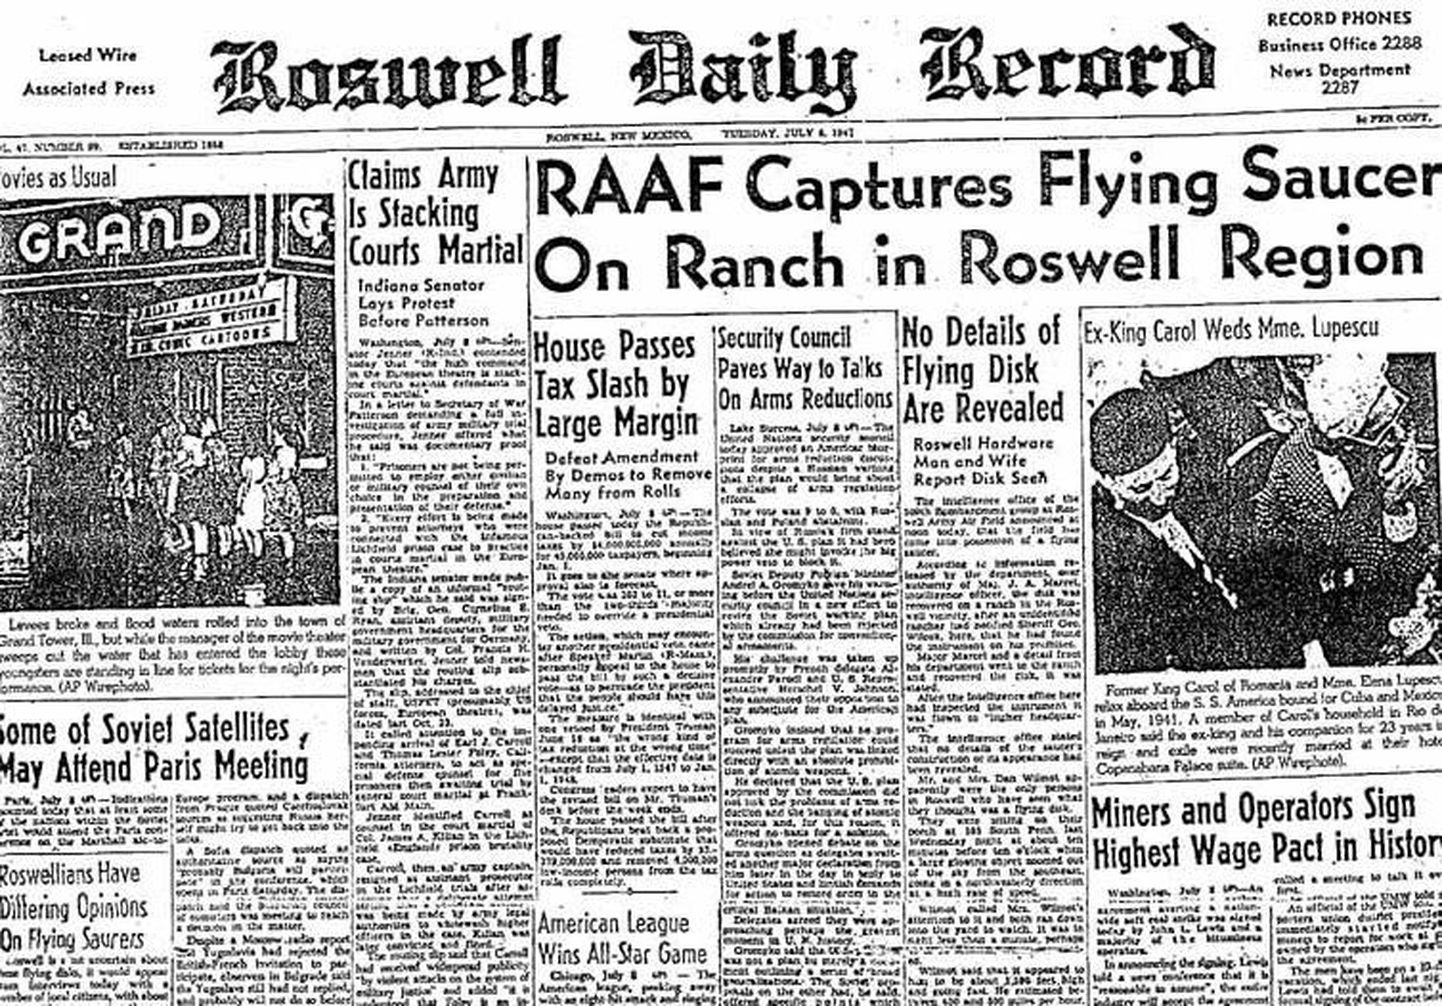 Väljaanne Roswell Daily Record avaldas artikli alla kukkunud lendavast taldrikust